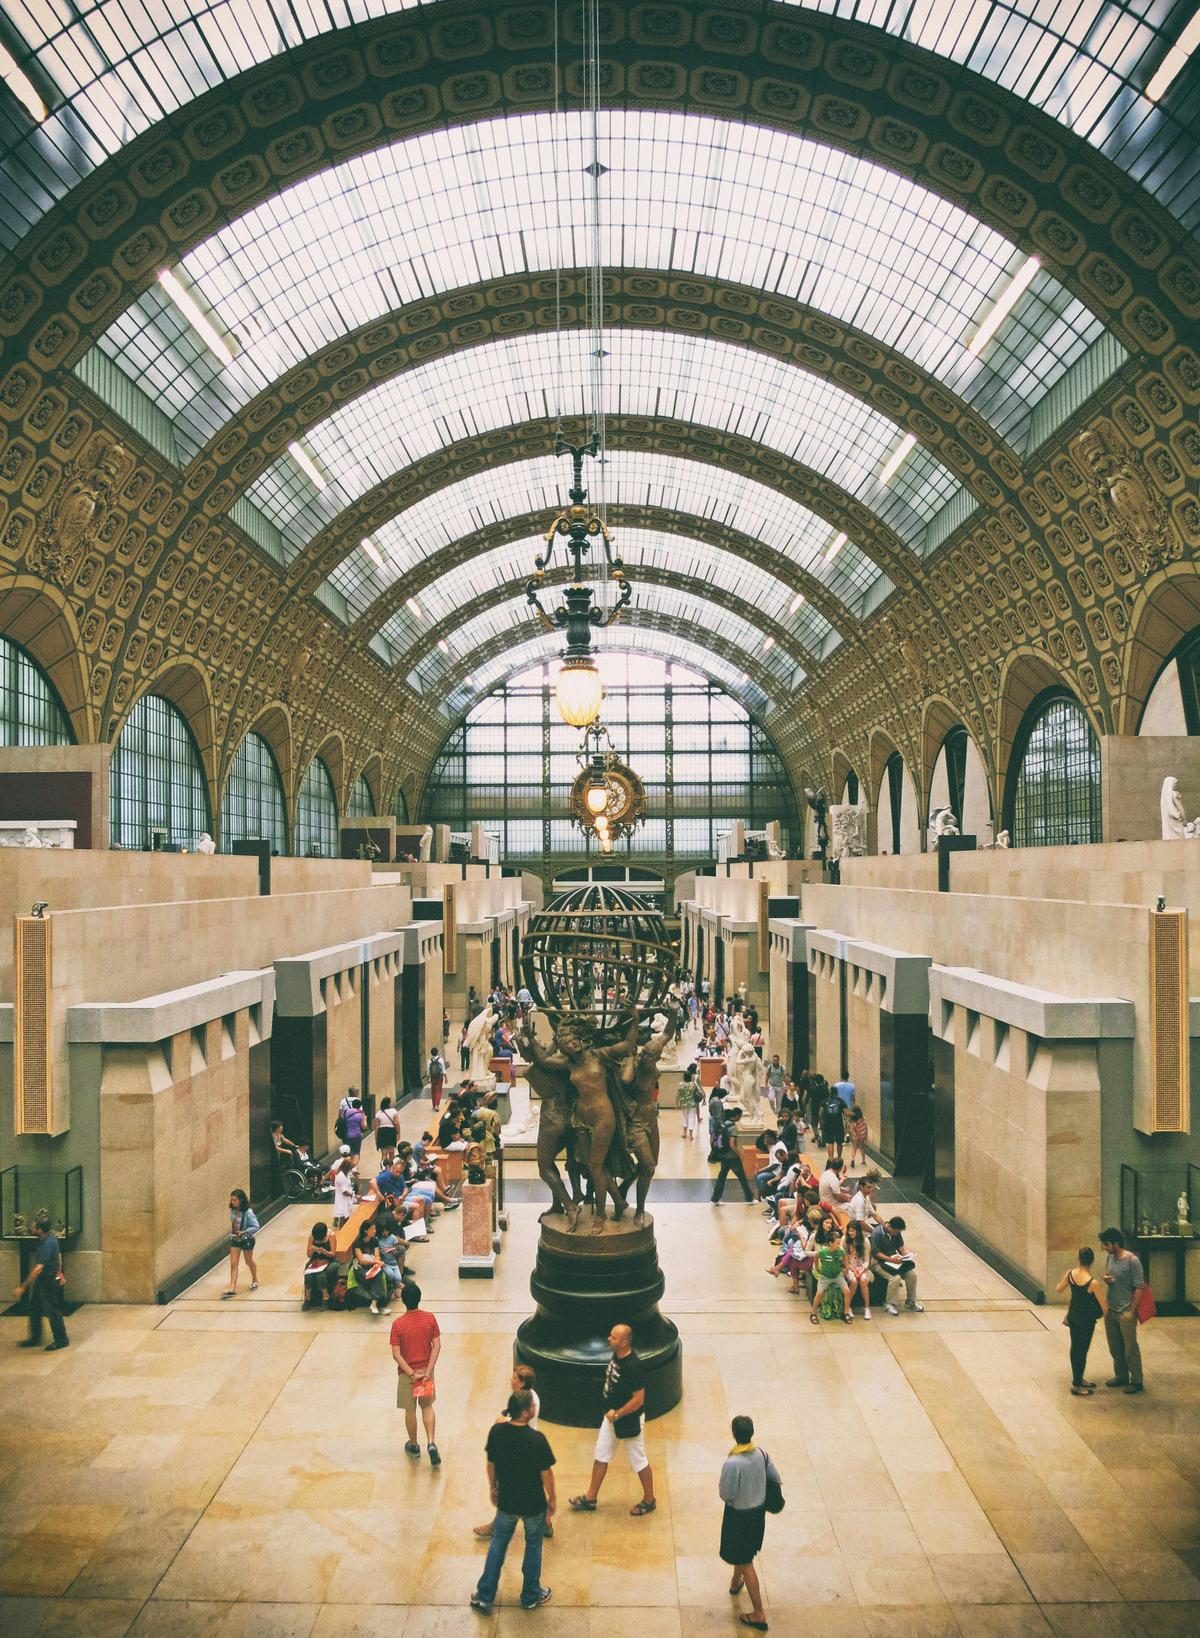 Museo de Orsay | Dedicado al arte impresionista y postimpresionista, con obras de artistas como Monet, Renoir y Van Gogh. Fuente Pexels